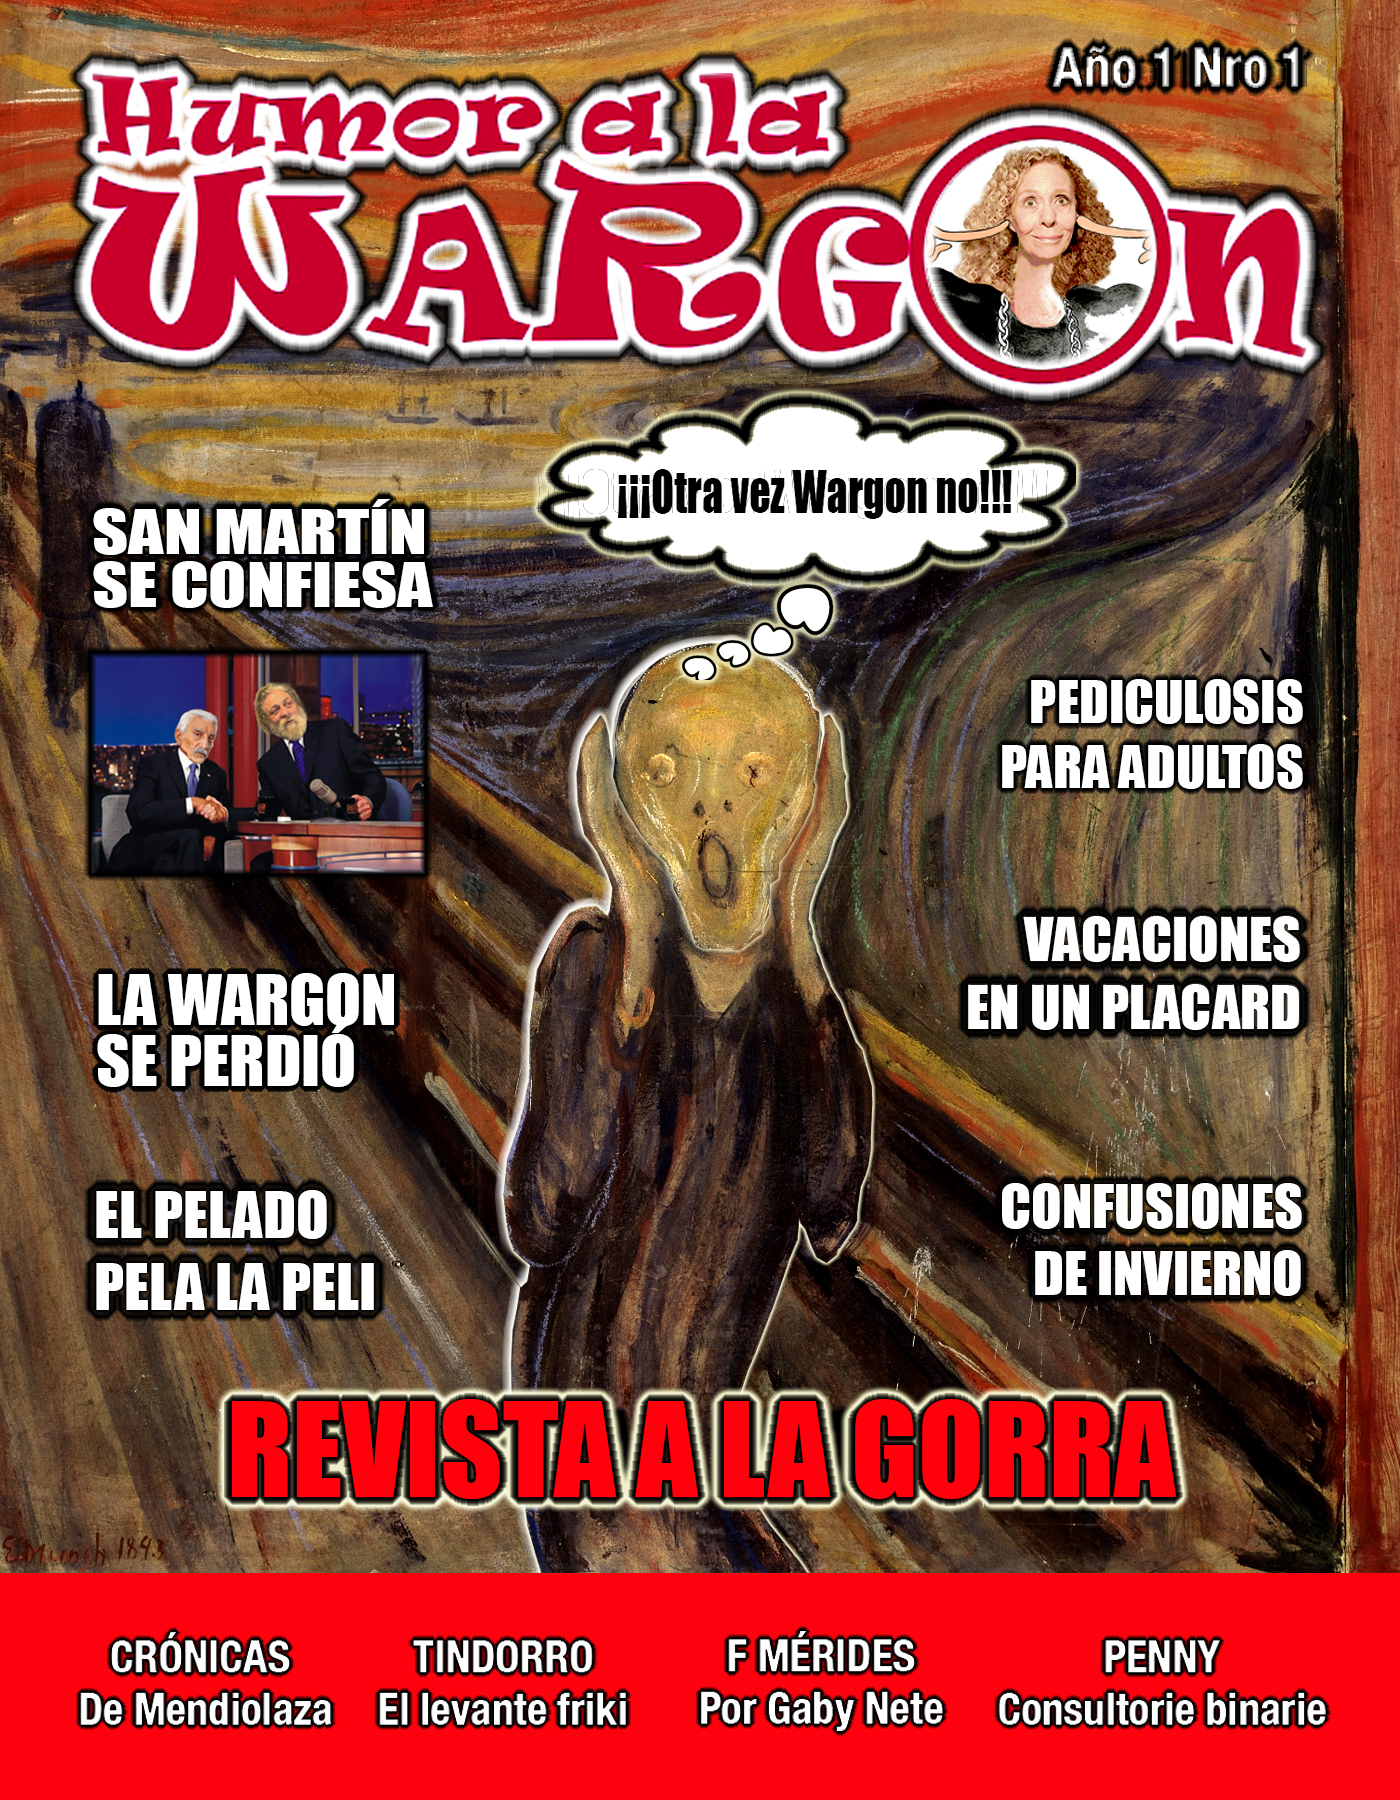 La Revista - Humor a la Wargon